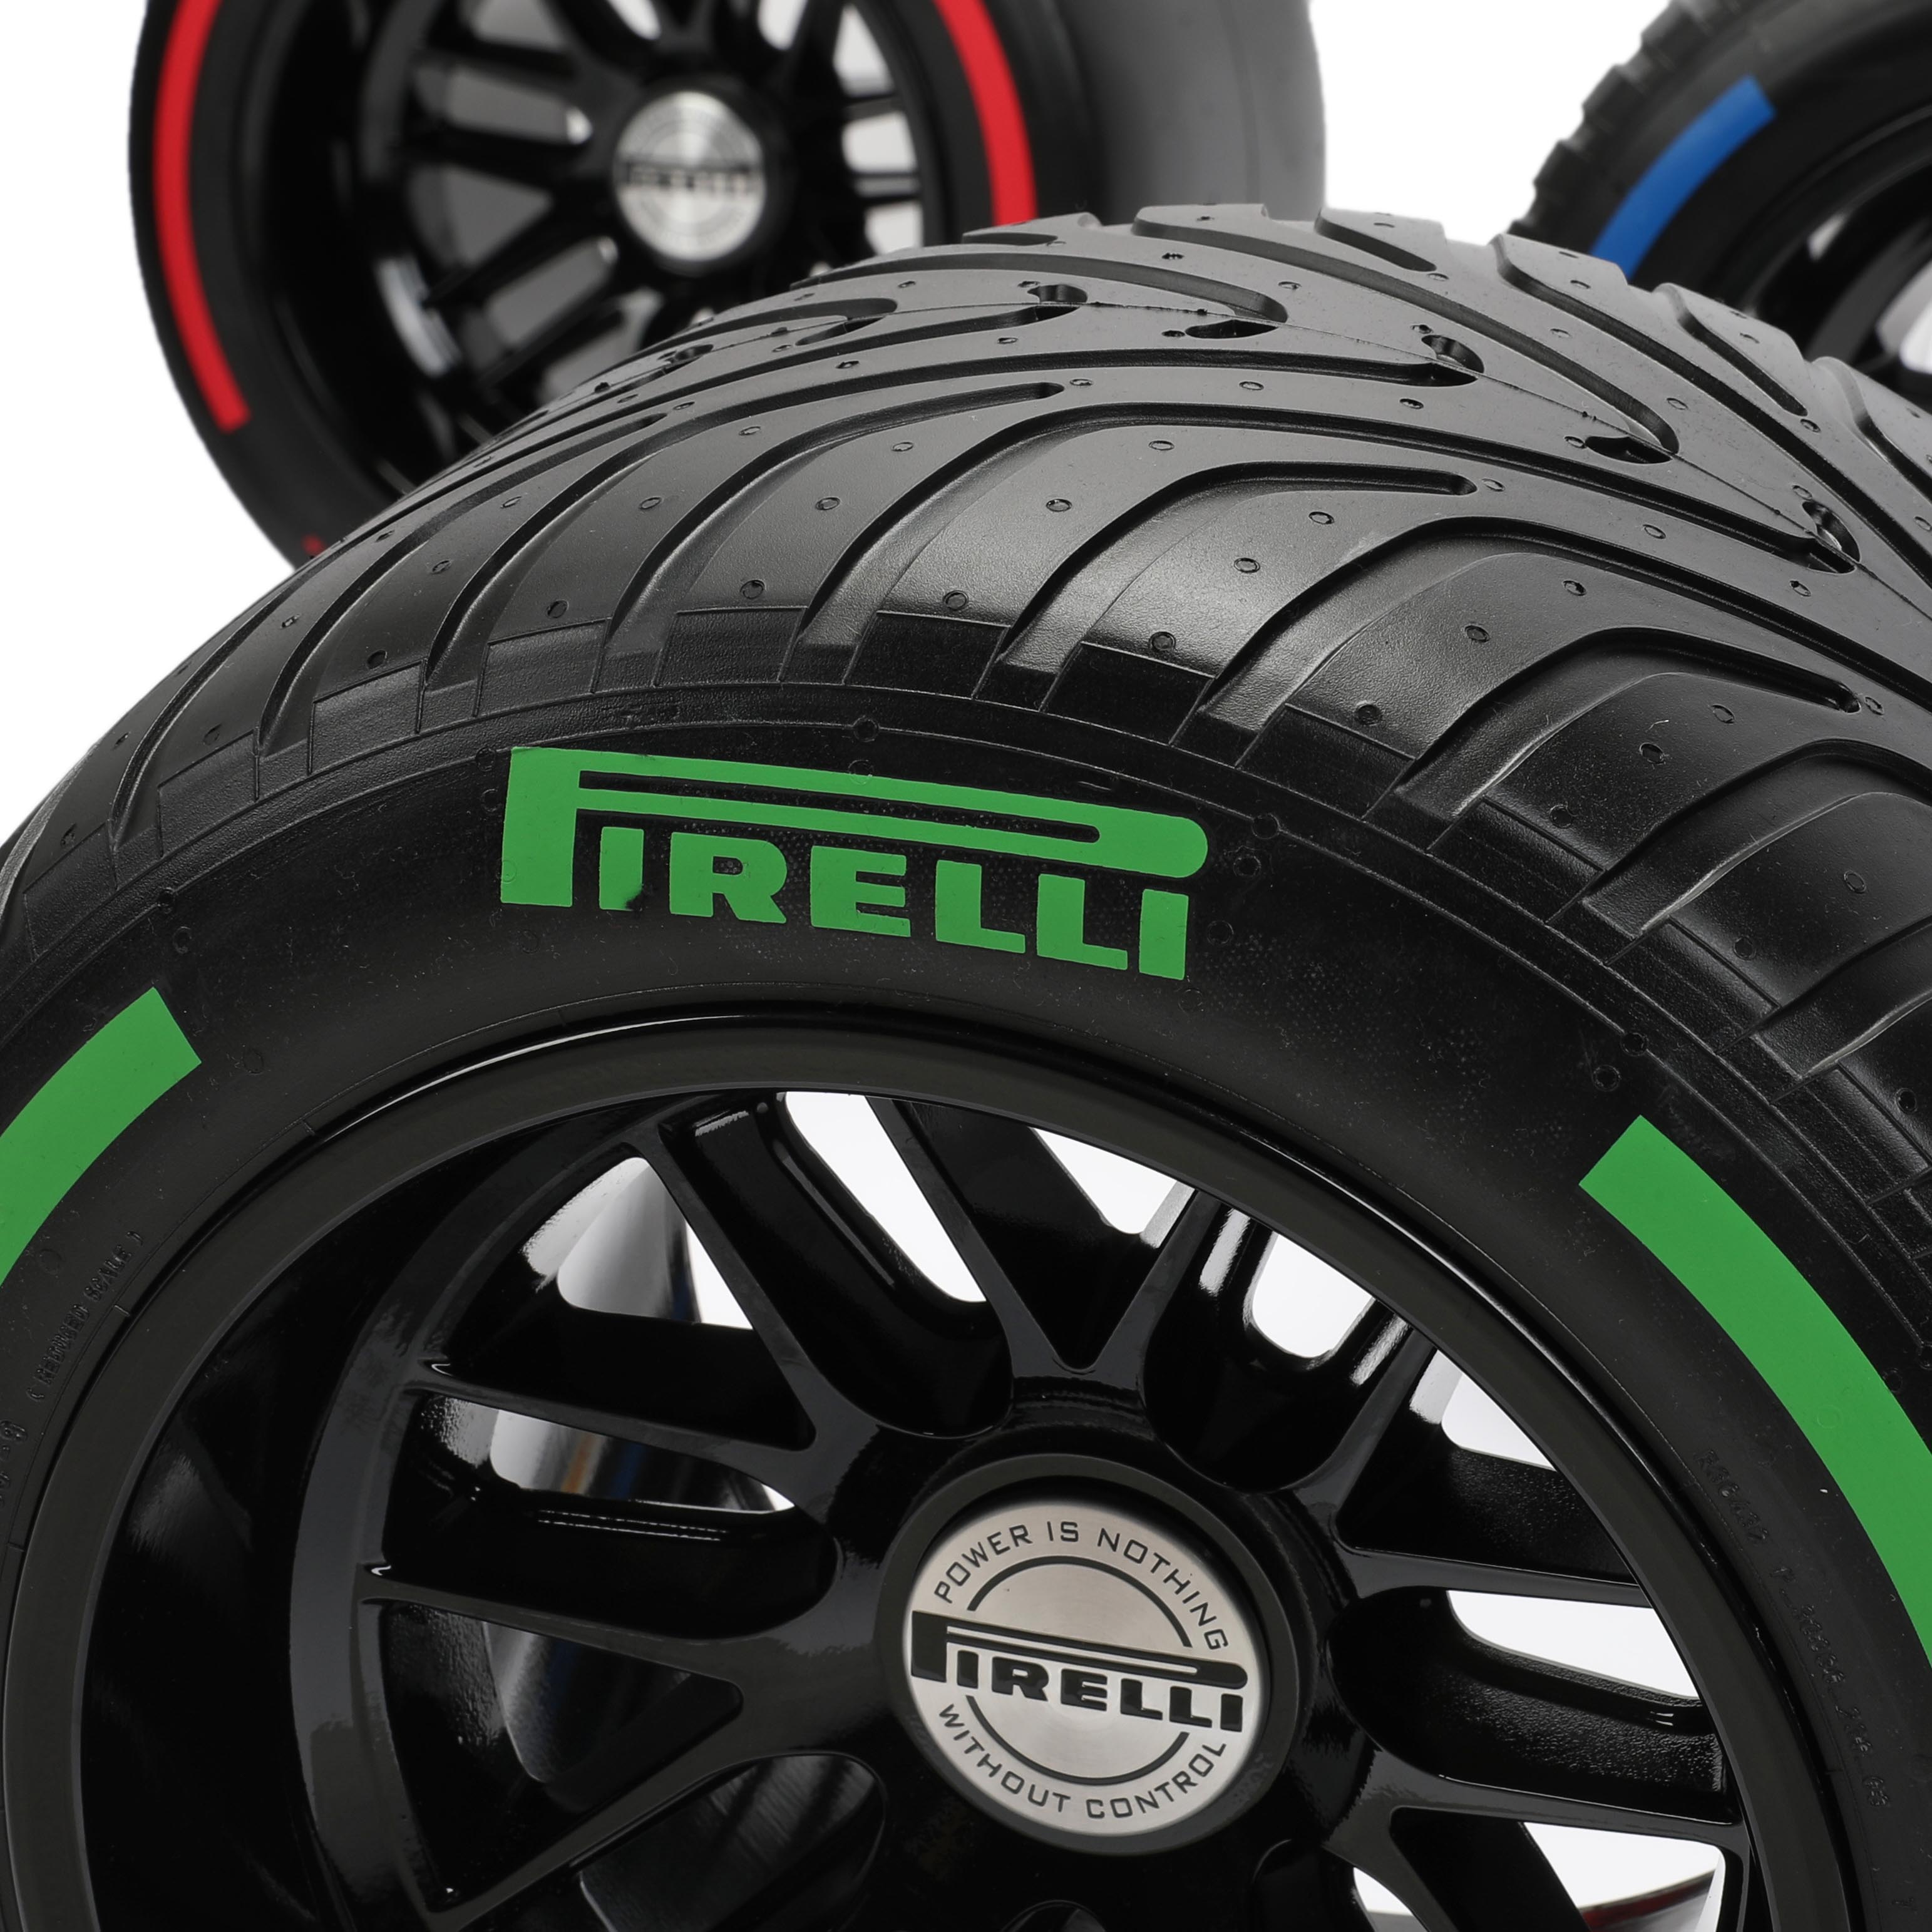 Pirelli Wind Tunnel Tyres Five Compound Bundle